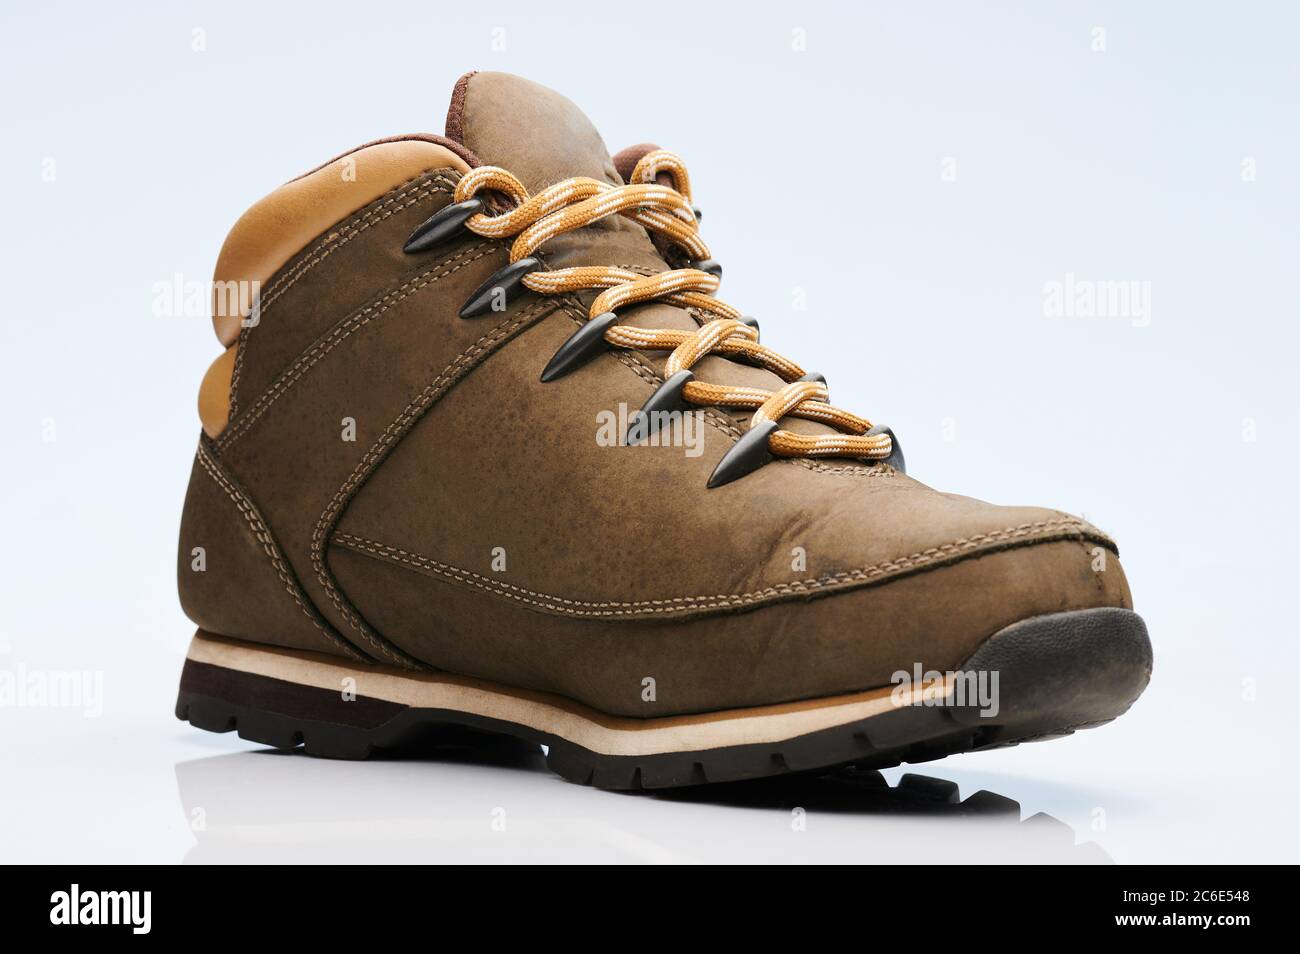 Chaussure de randonnée en cuir marron isolée sur fond blanc Banque D'Images